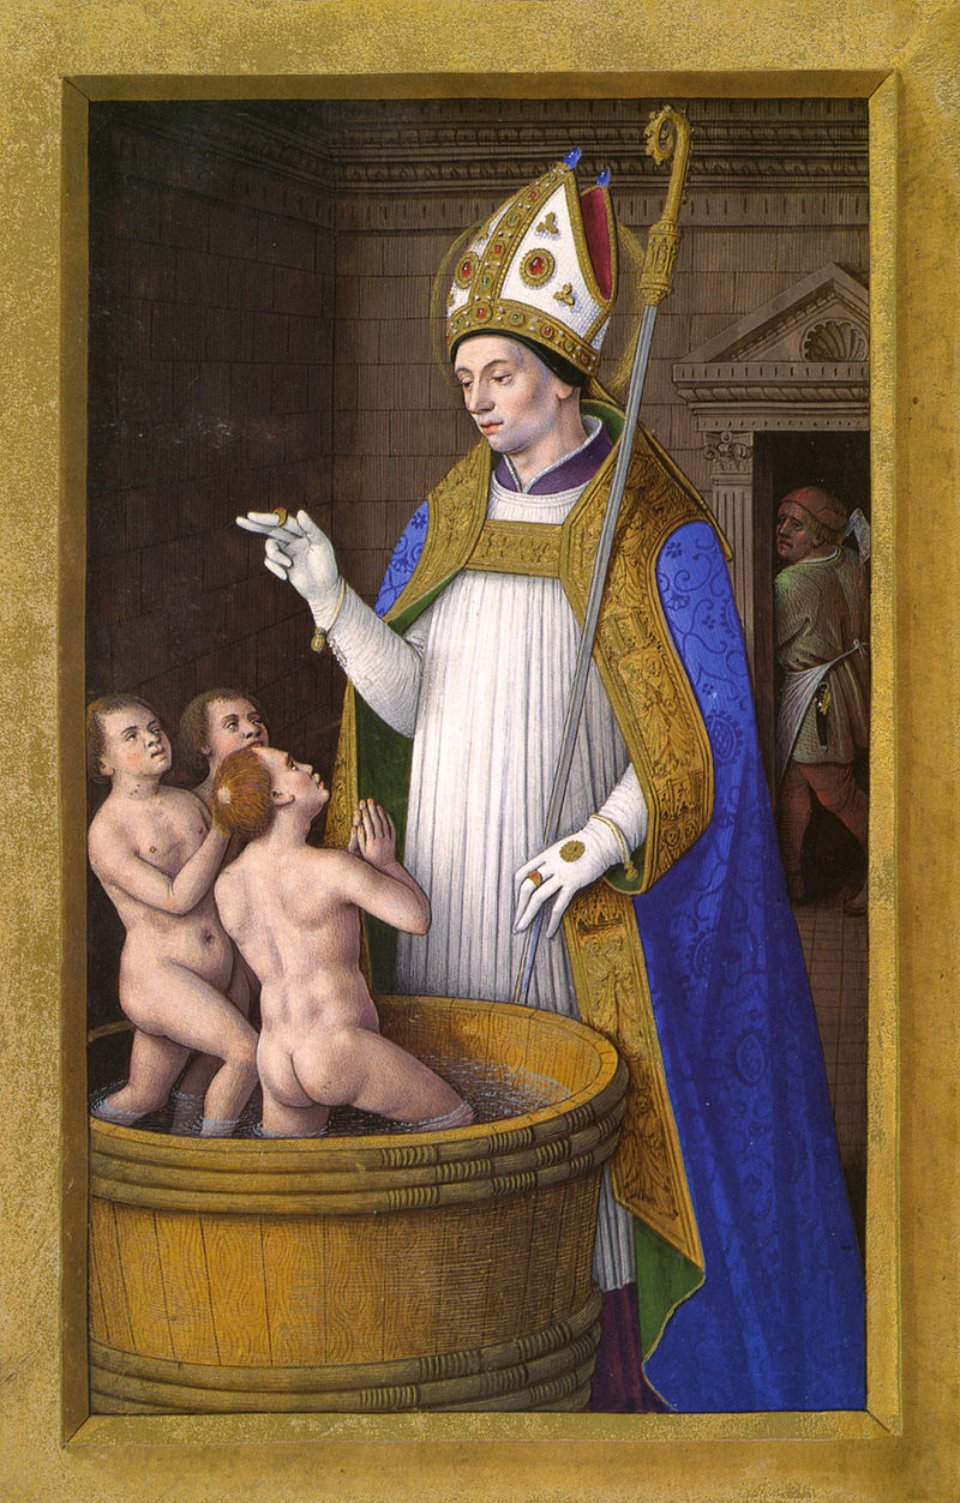 Зображення святого Миколая, який воскрешає трьох хлопчиків, з «Великого часослову Анни Бретонської» (початок ХVI століття)